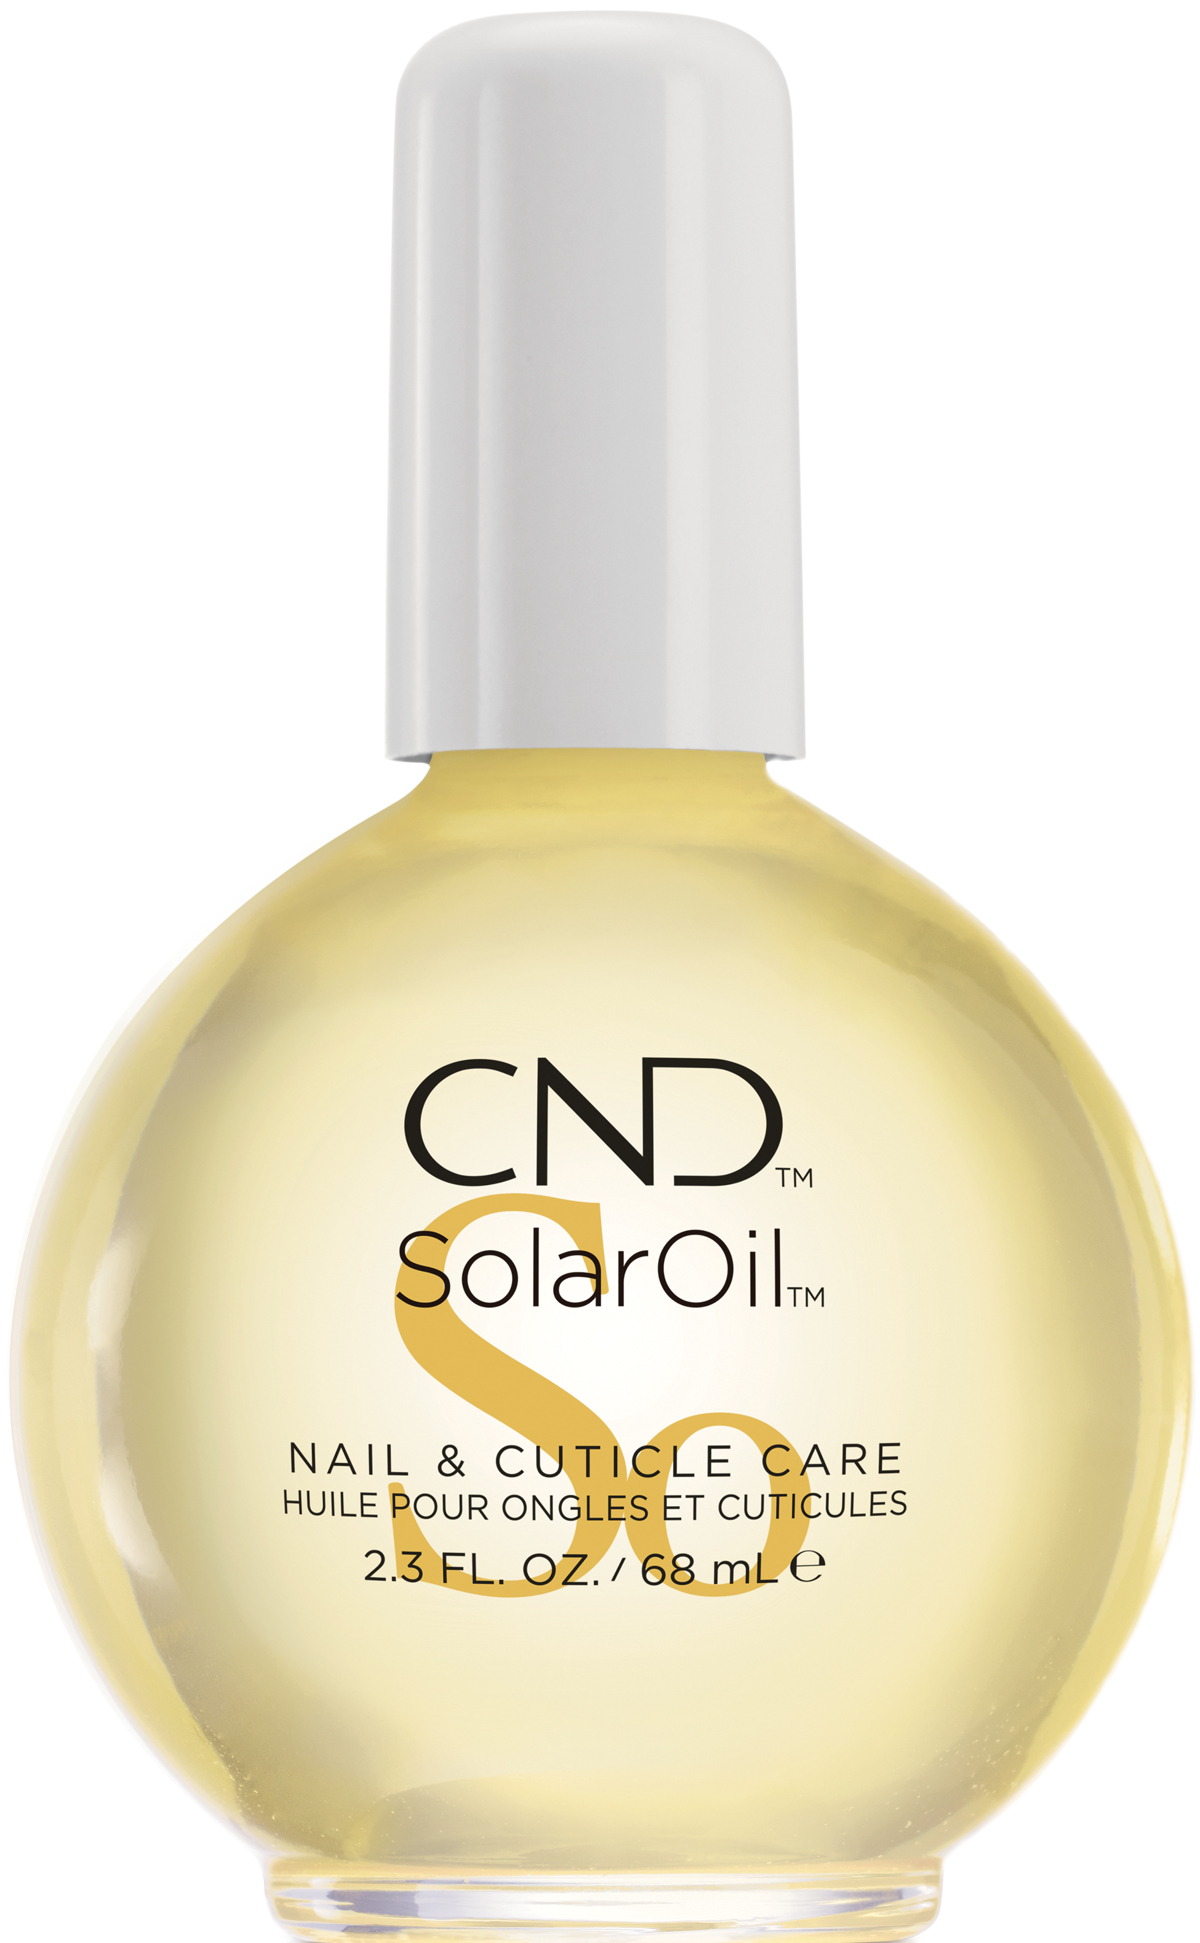 Solaroli Nail & Cuticle Care